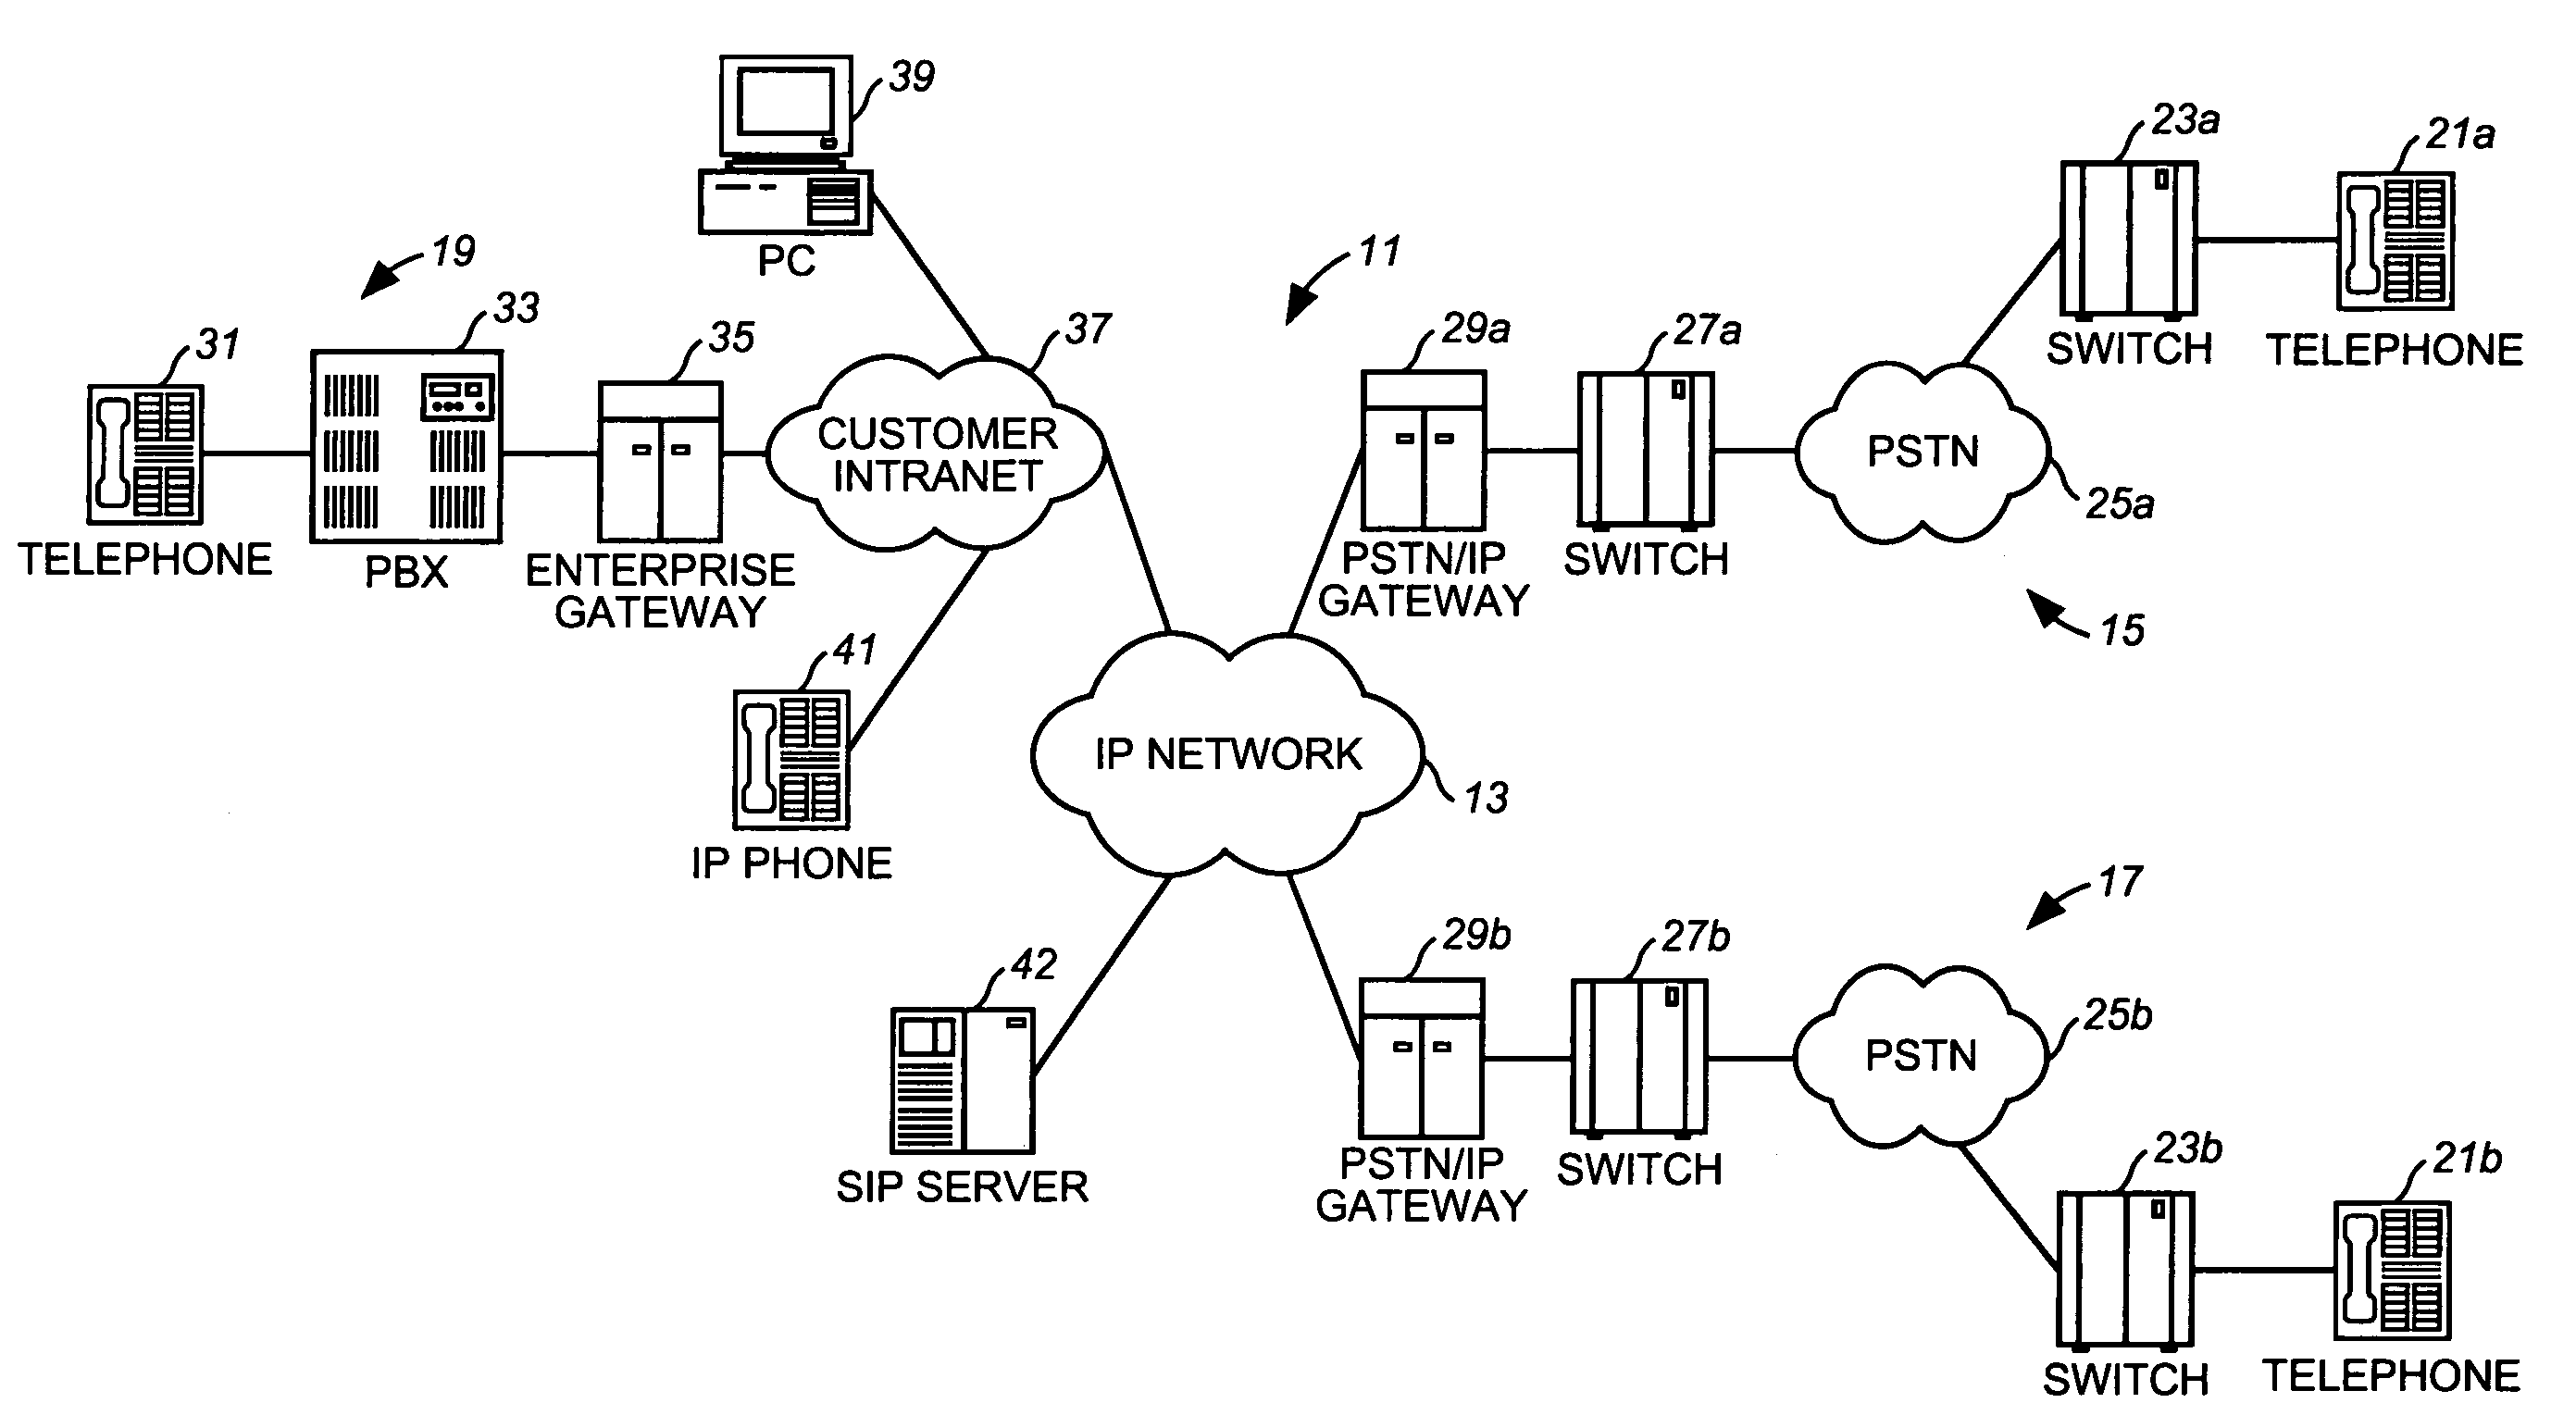 Internet protocol transport of PSTN-to-PSTN telephony services